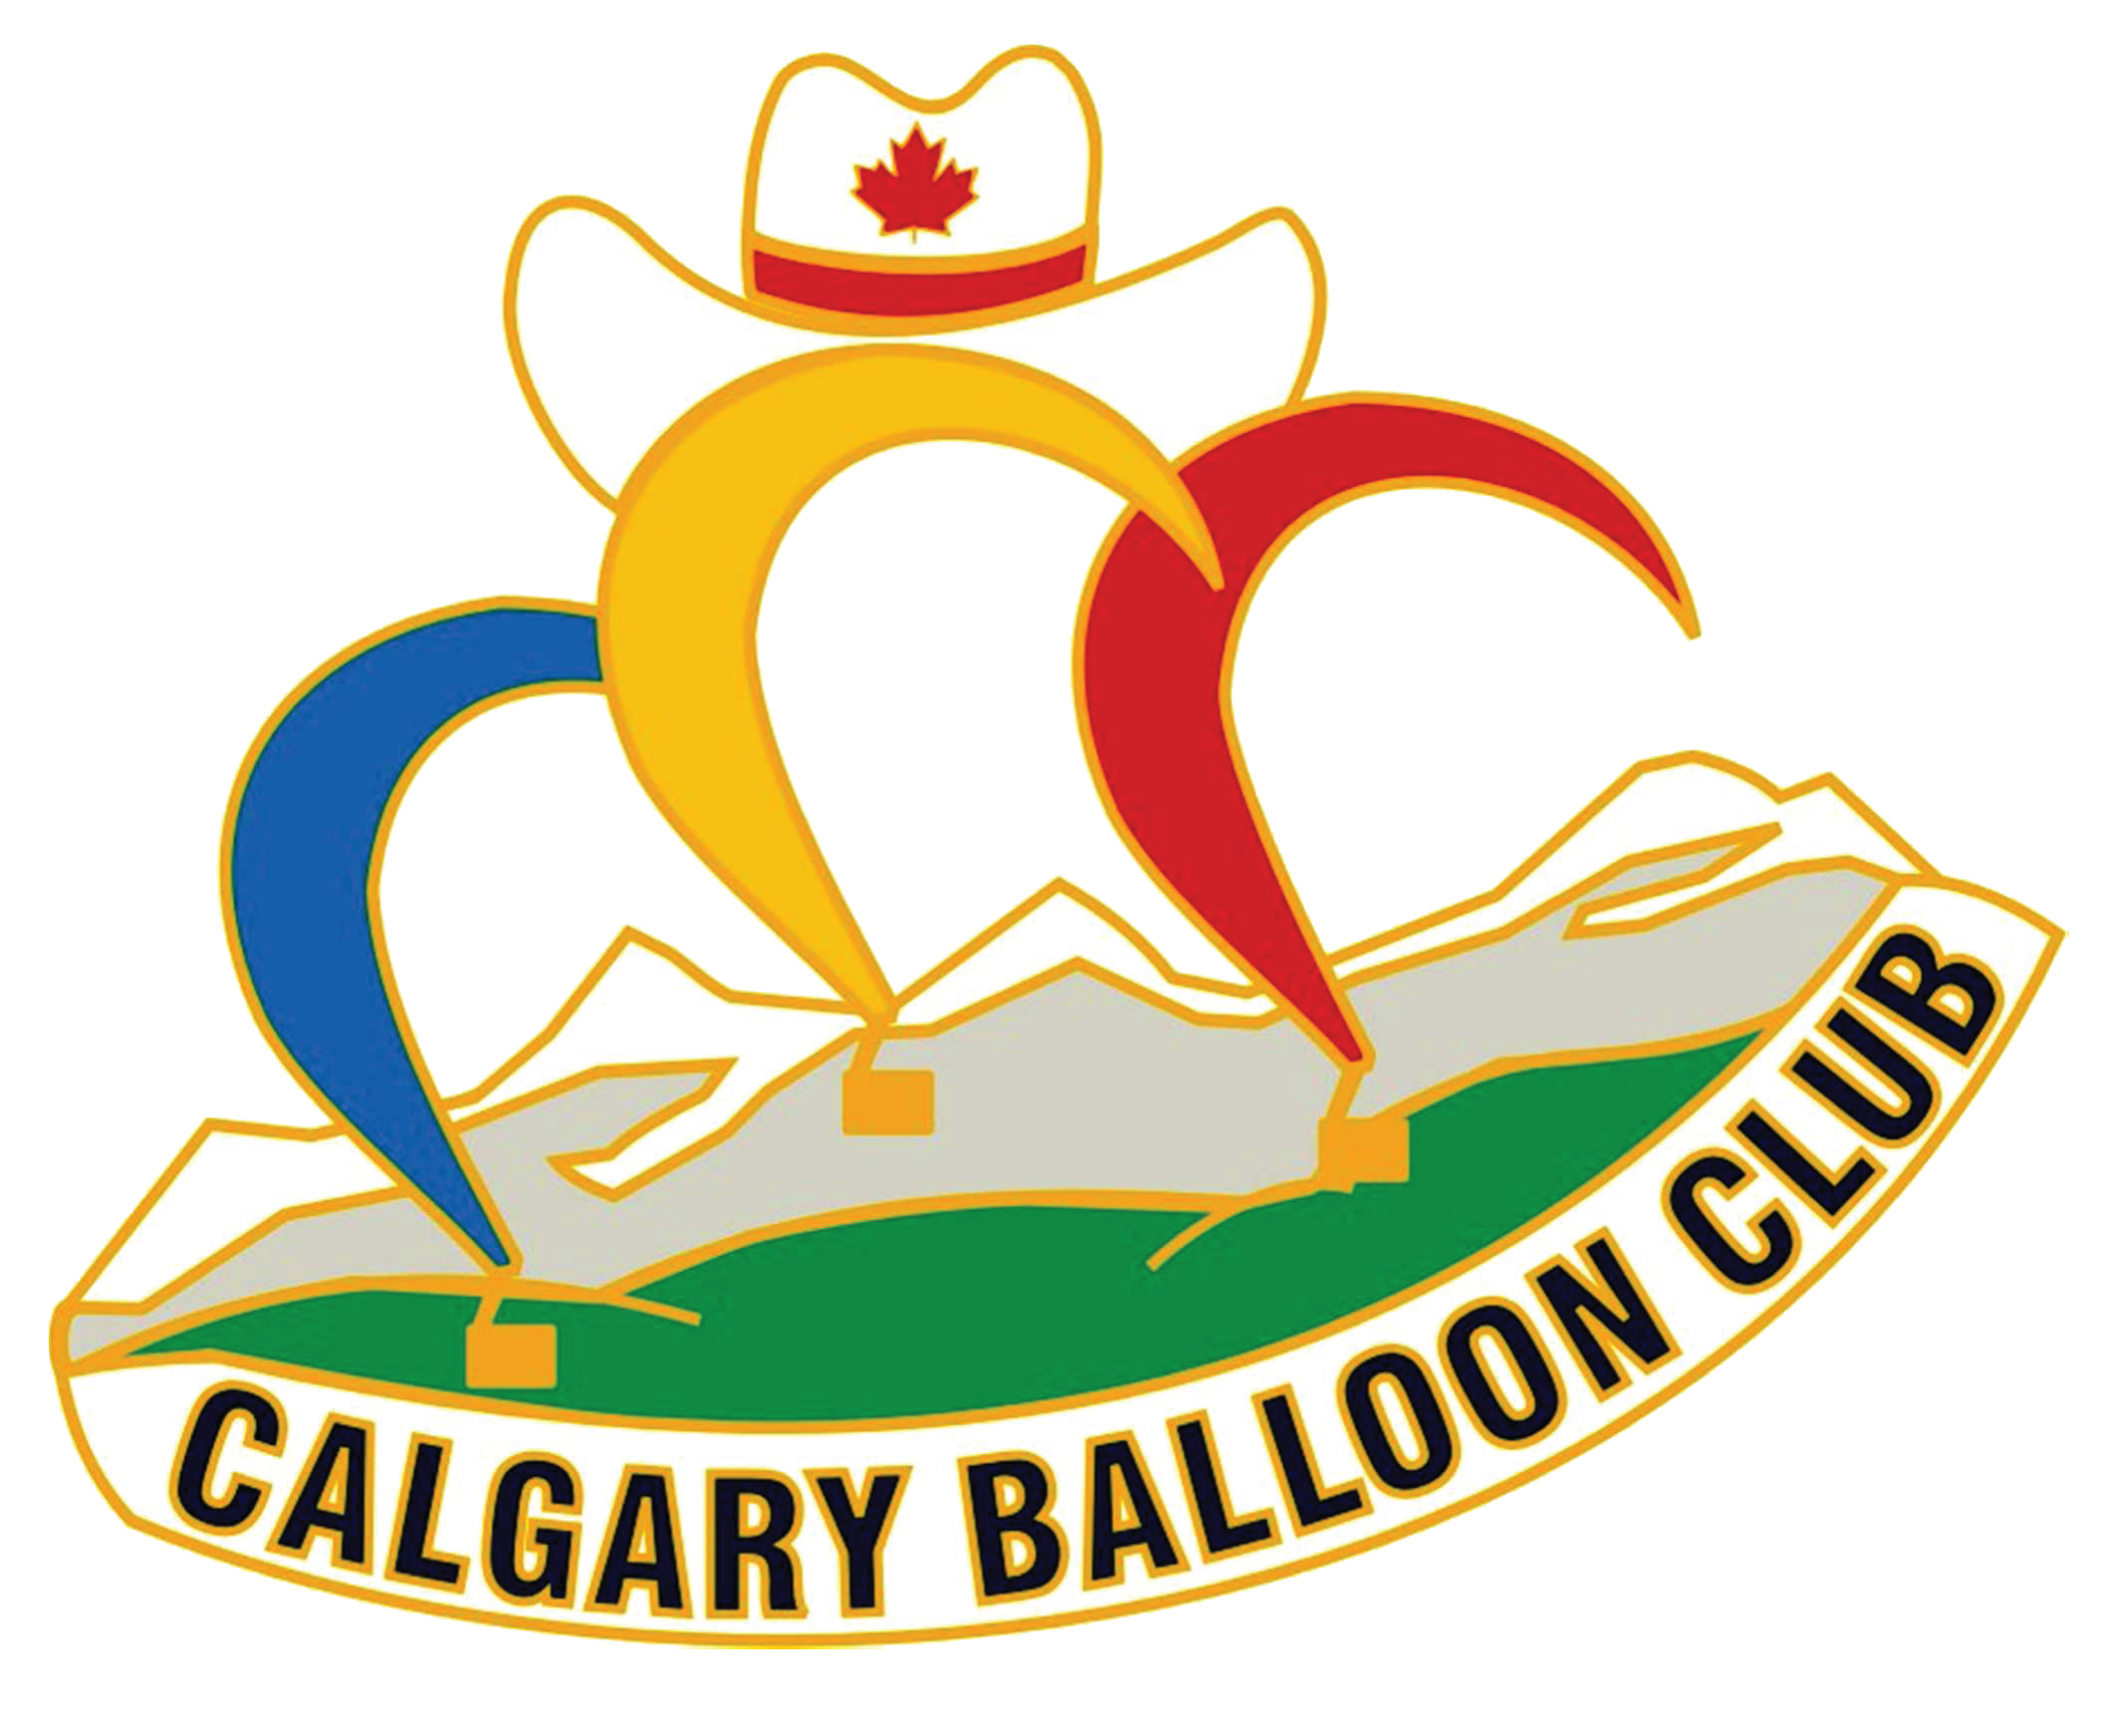 CalgaryBalloonClub.ca